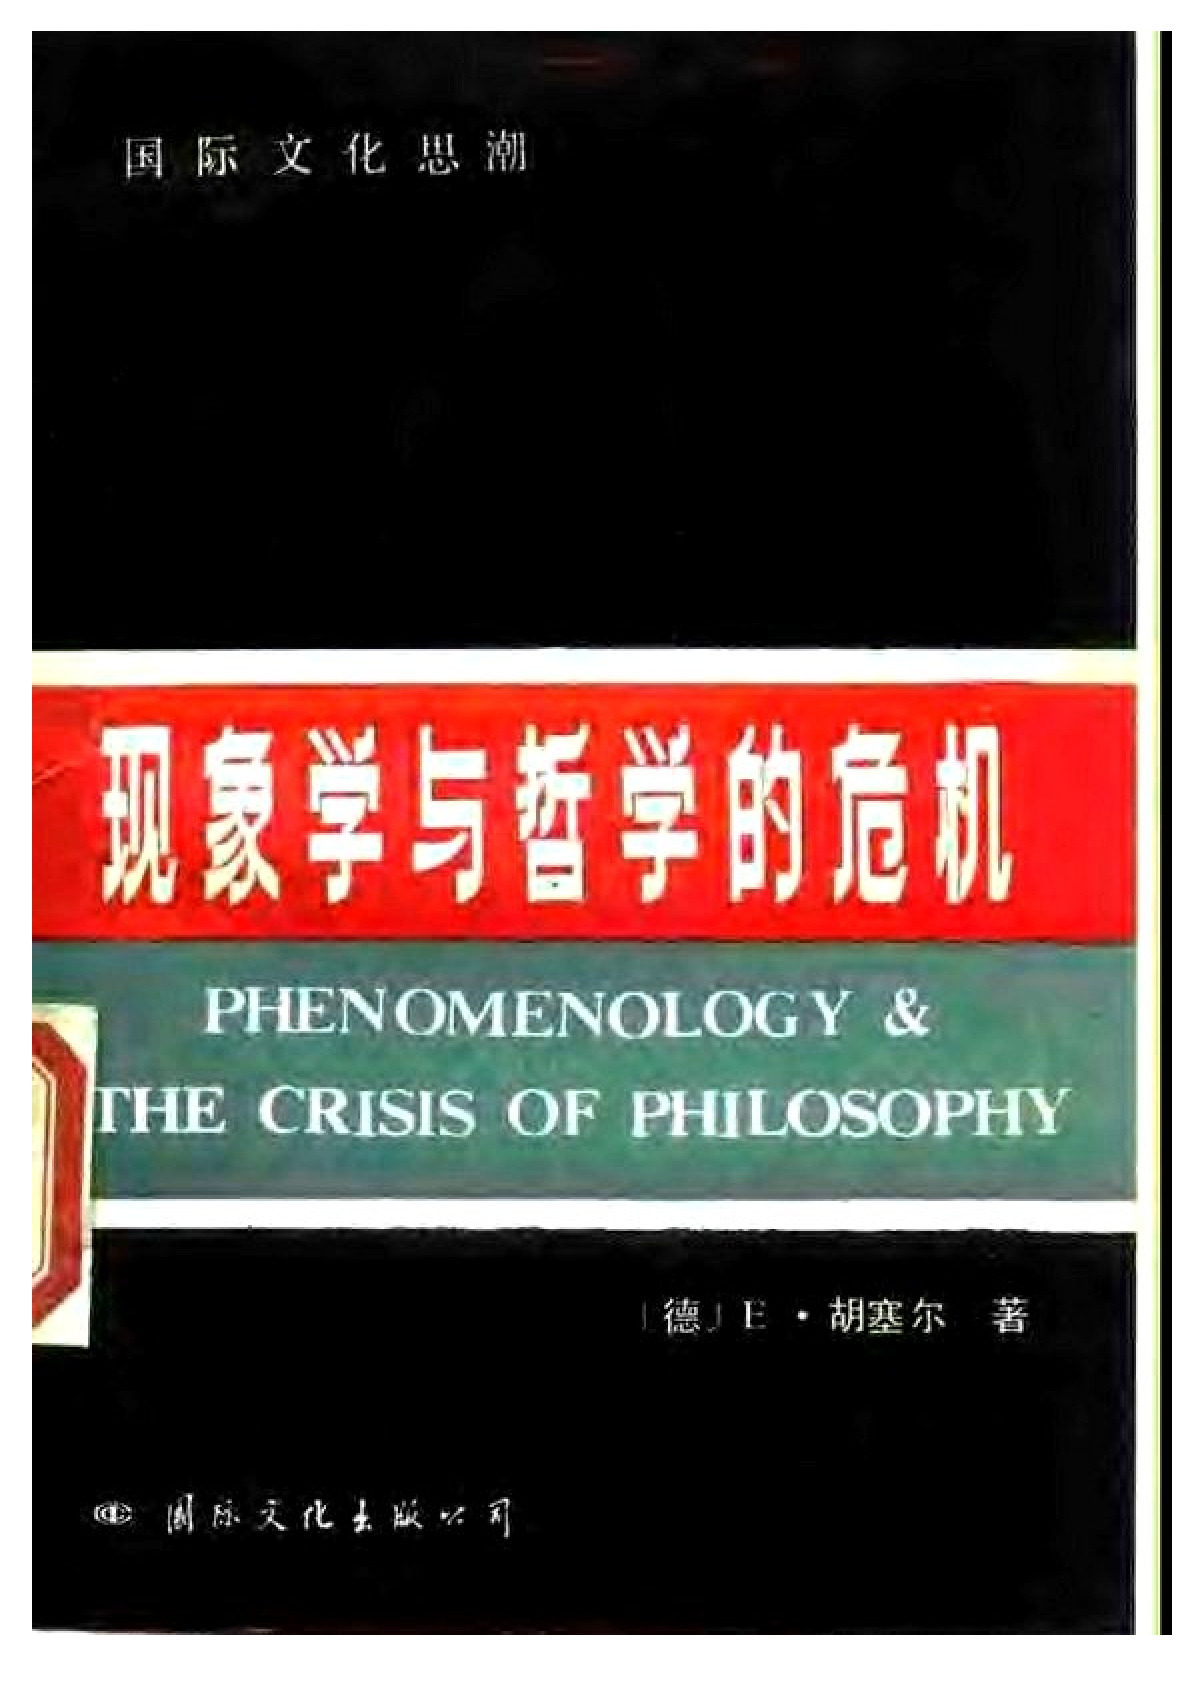 《现象学与哲学的危机》（吕祥 译）国际文化出版公司1988年版